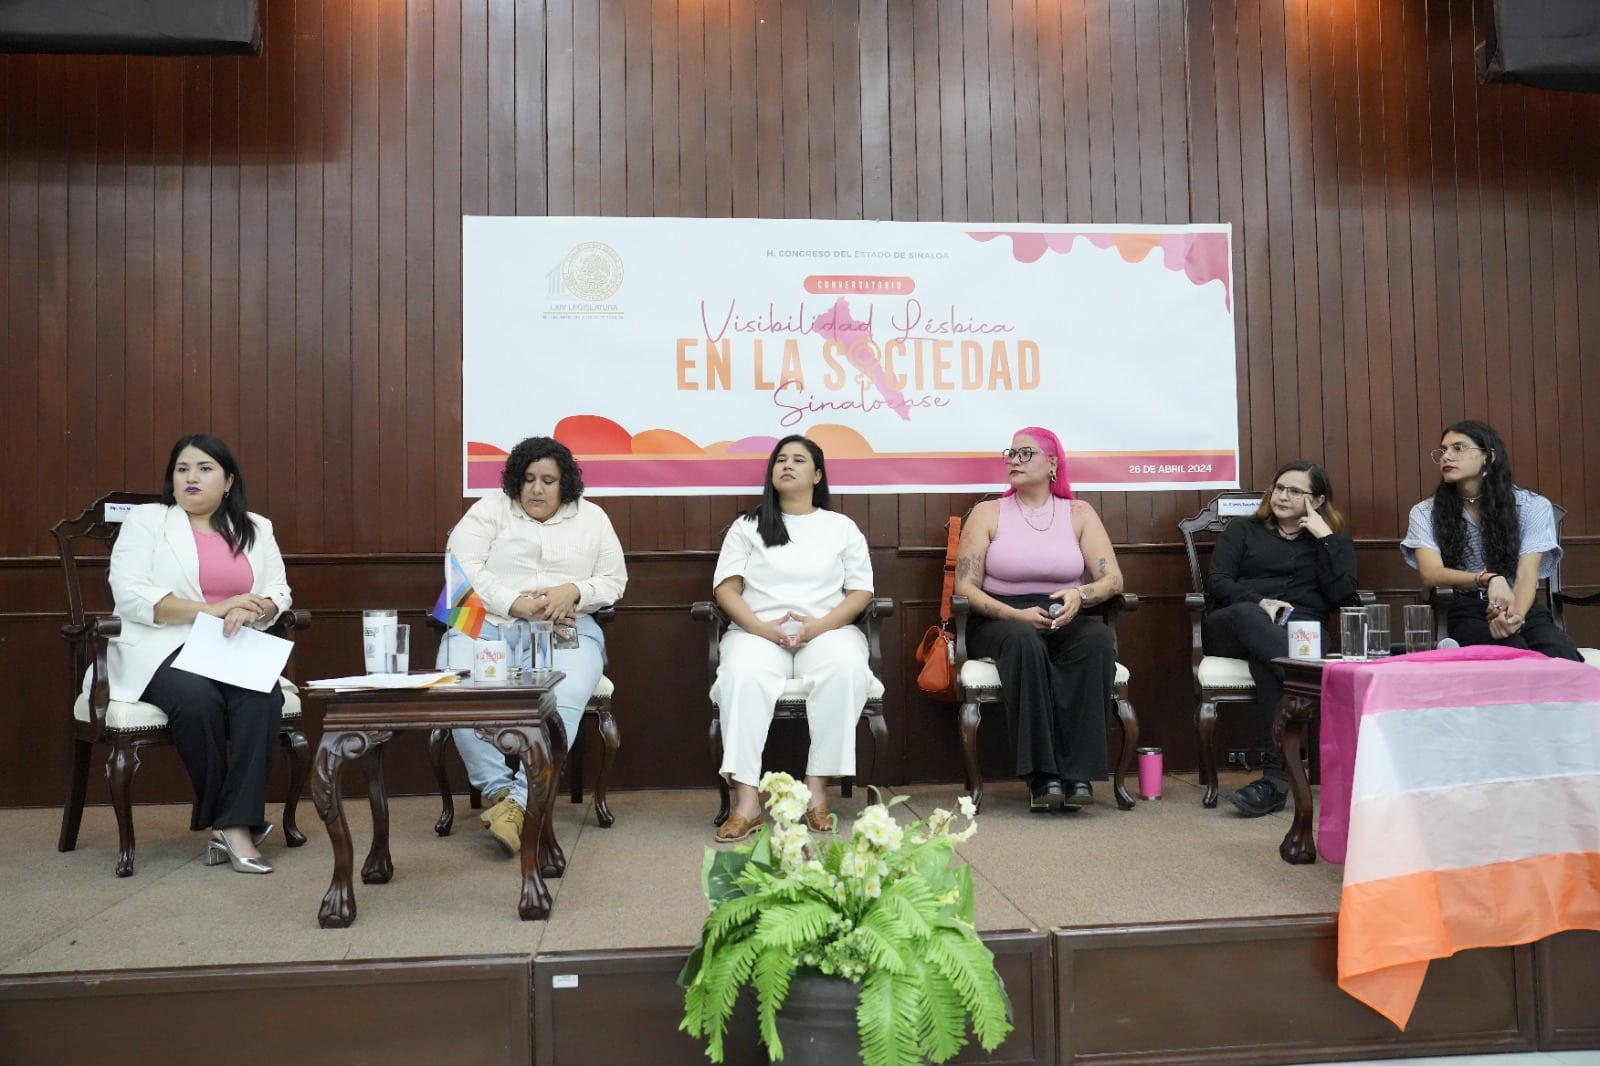 primer conversatorio de: Visibilidad lésbica en la sociedad sinaloense que organizó la Comisión de Igualdad, Género, Diversidad Sexual e Inclusión, del Congreso del Estado de Sinaloa